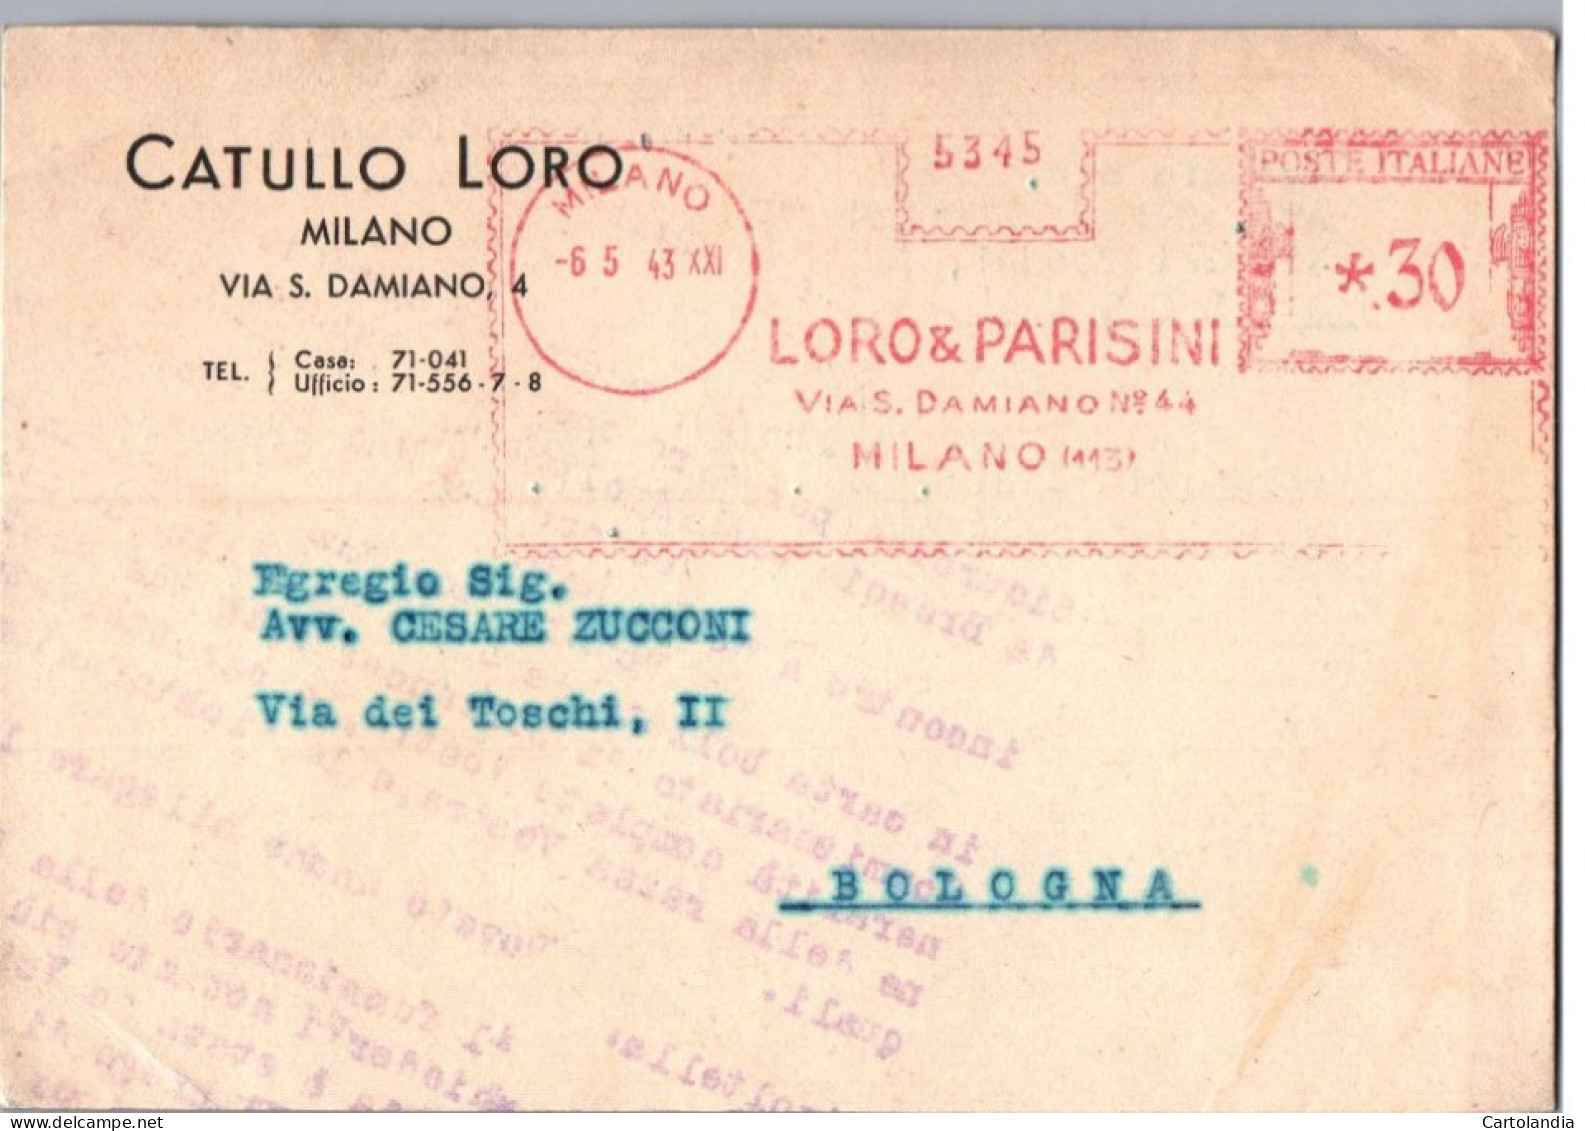 ITALIA 1943  -   Annullo Meccanico Rosso (EMA)   Loro & Parisini  Milano - Macchine Per Obliterare (EMA)